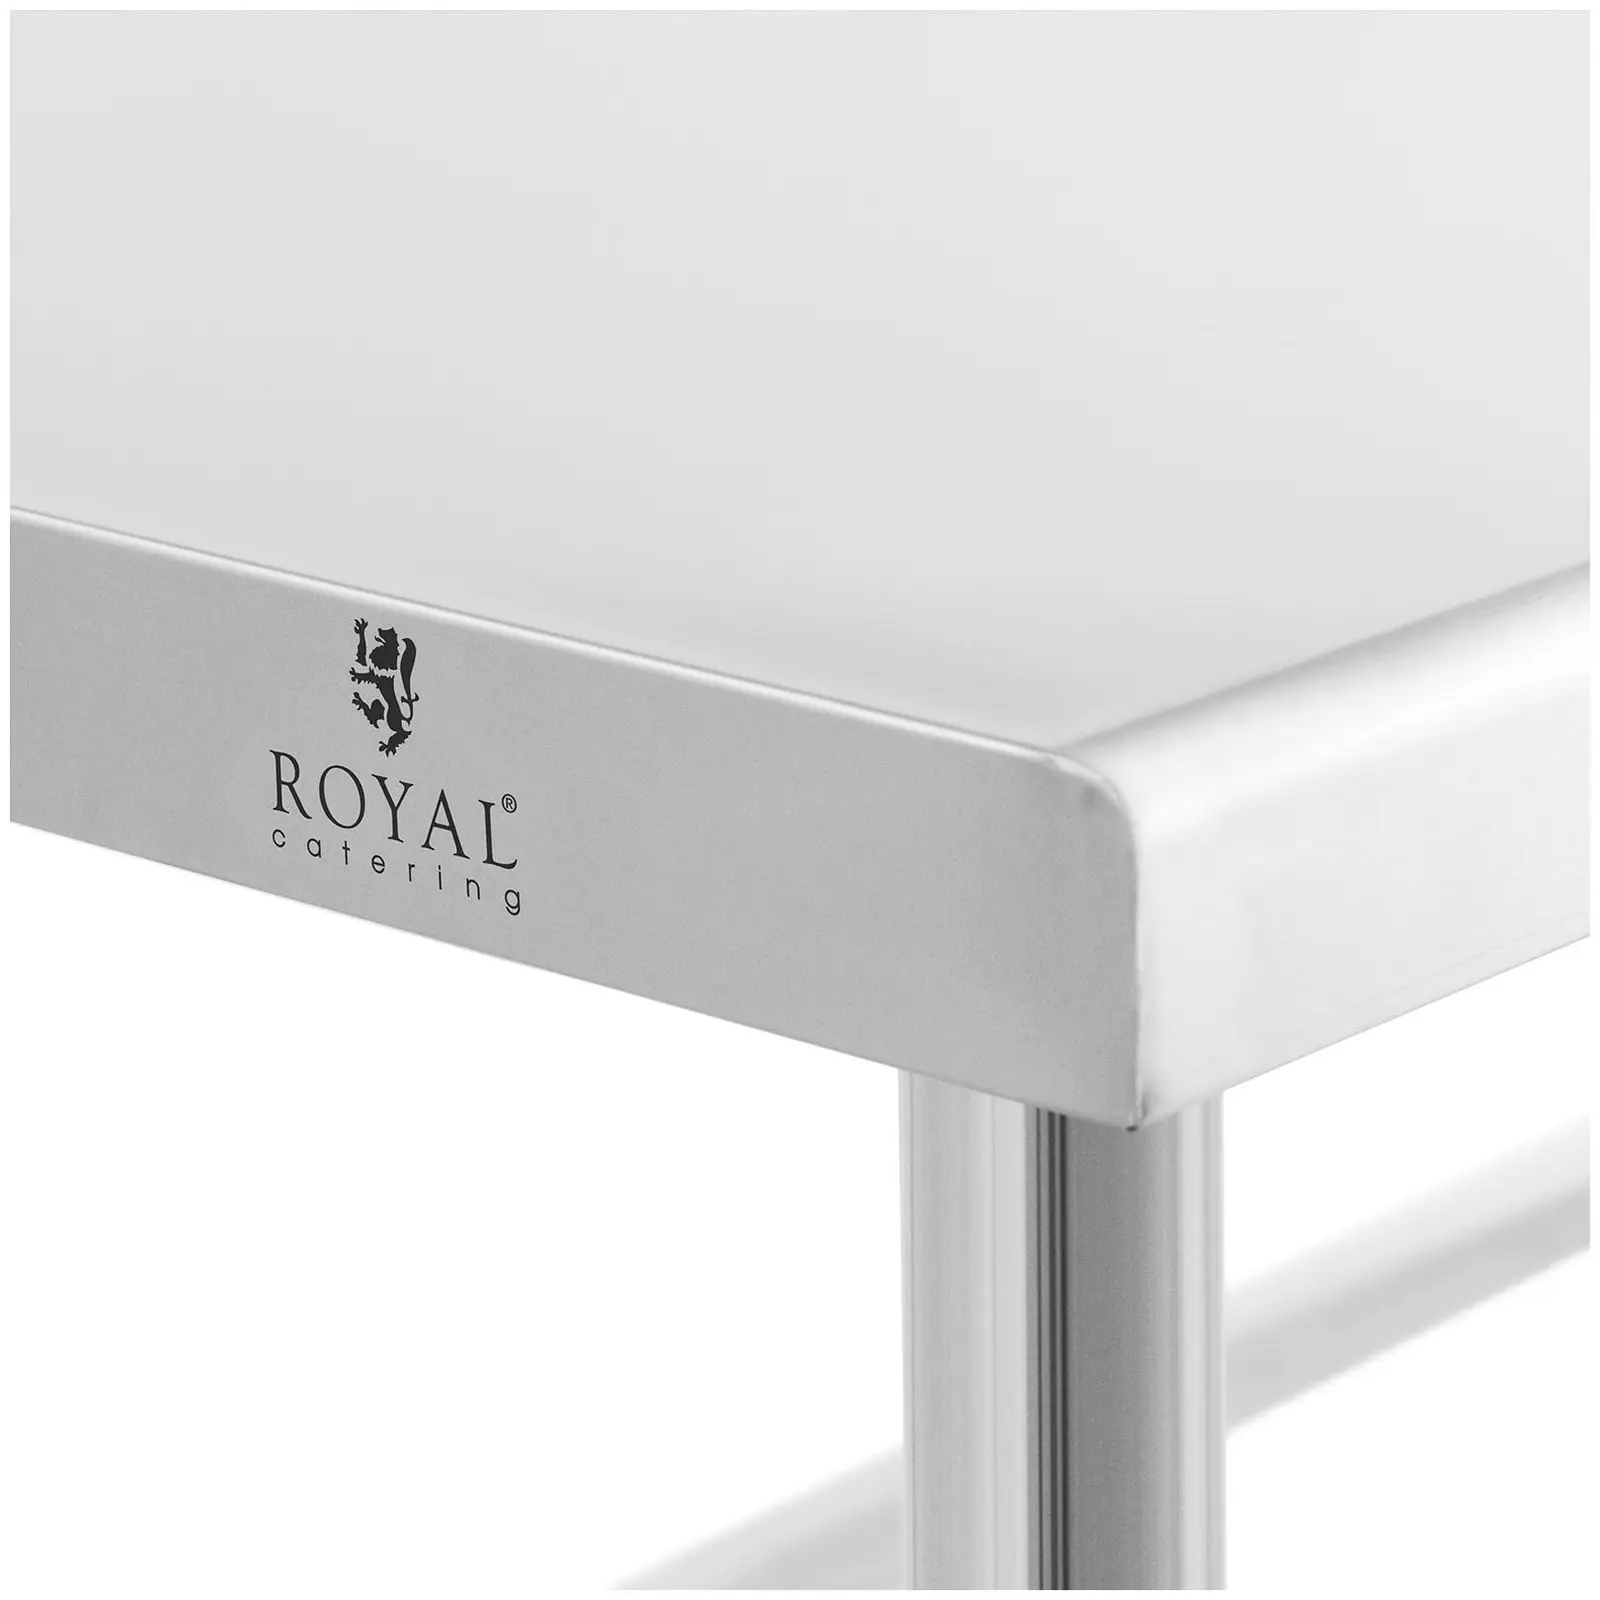 Pracovní stůl z ušlechtilé oceli - 200 x 70 cm - lem - nosnost 95 kg - Royal Catering